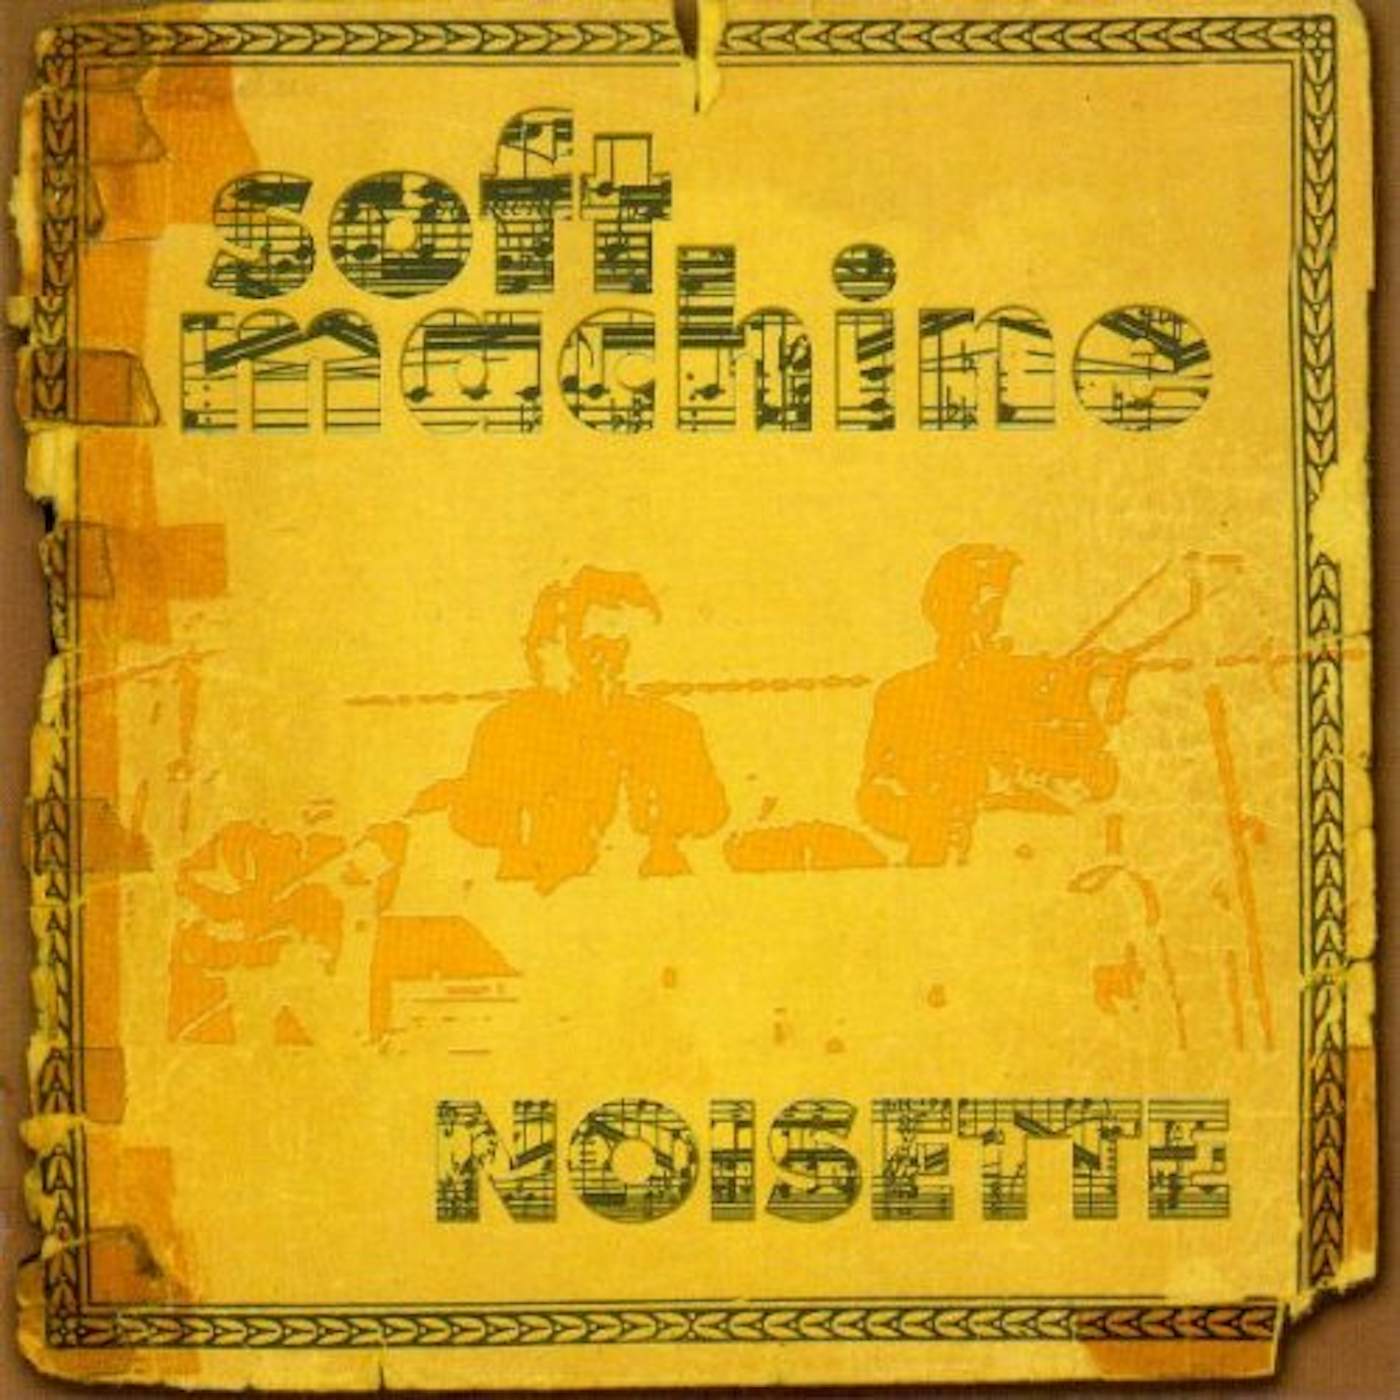 Soft Machine NOISETTE CD